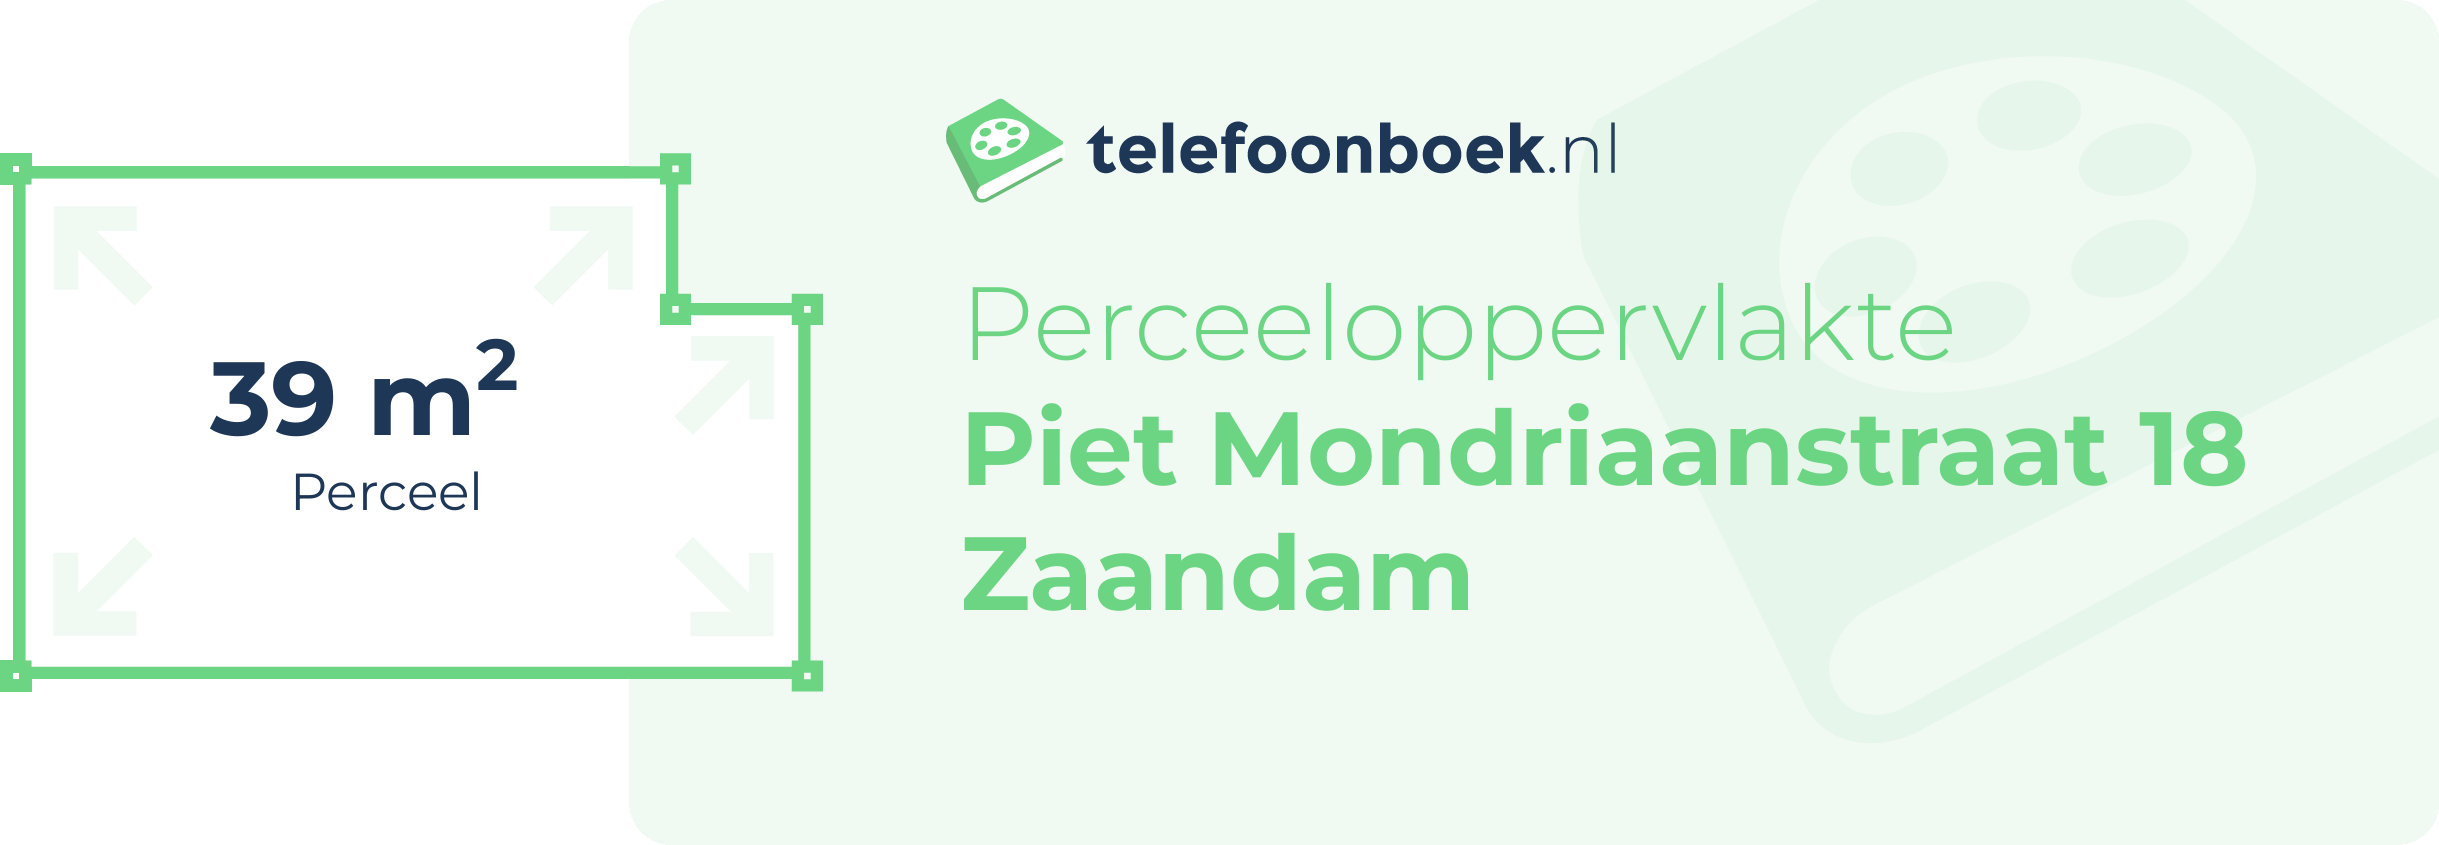 Perceeloppervlakte Piet Mondriaanstraat 18 Zaandam